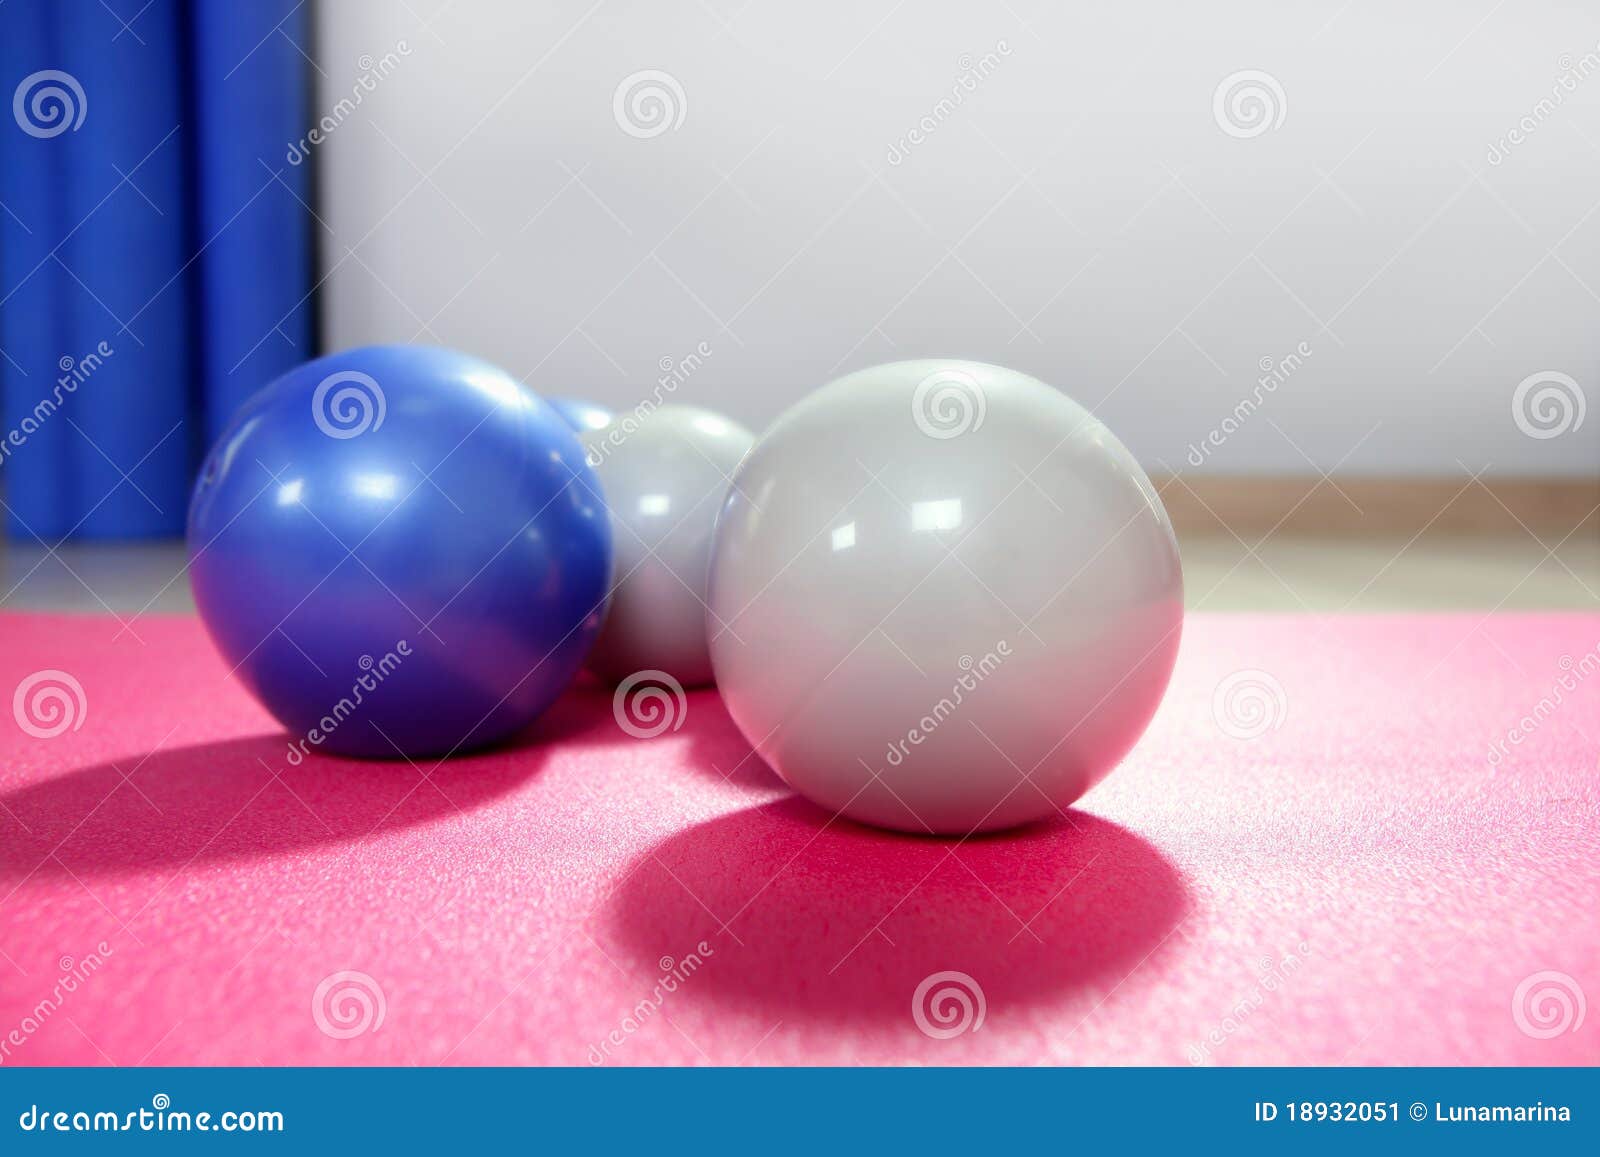 pilates toning balls over red yoga mat